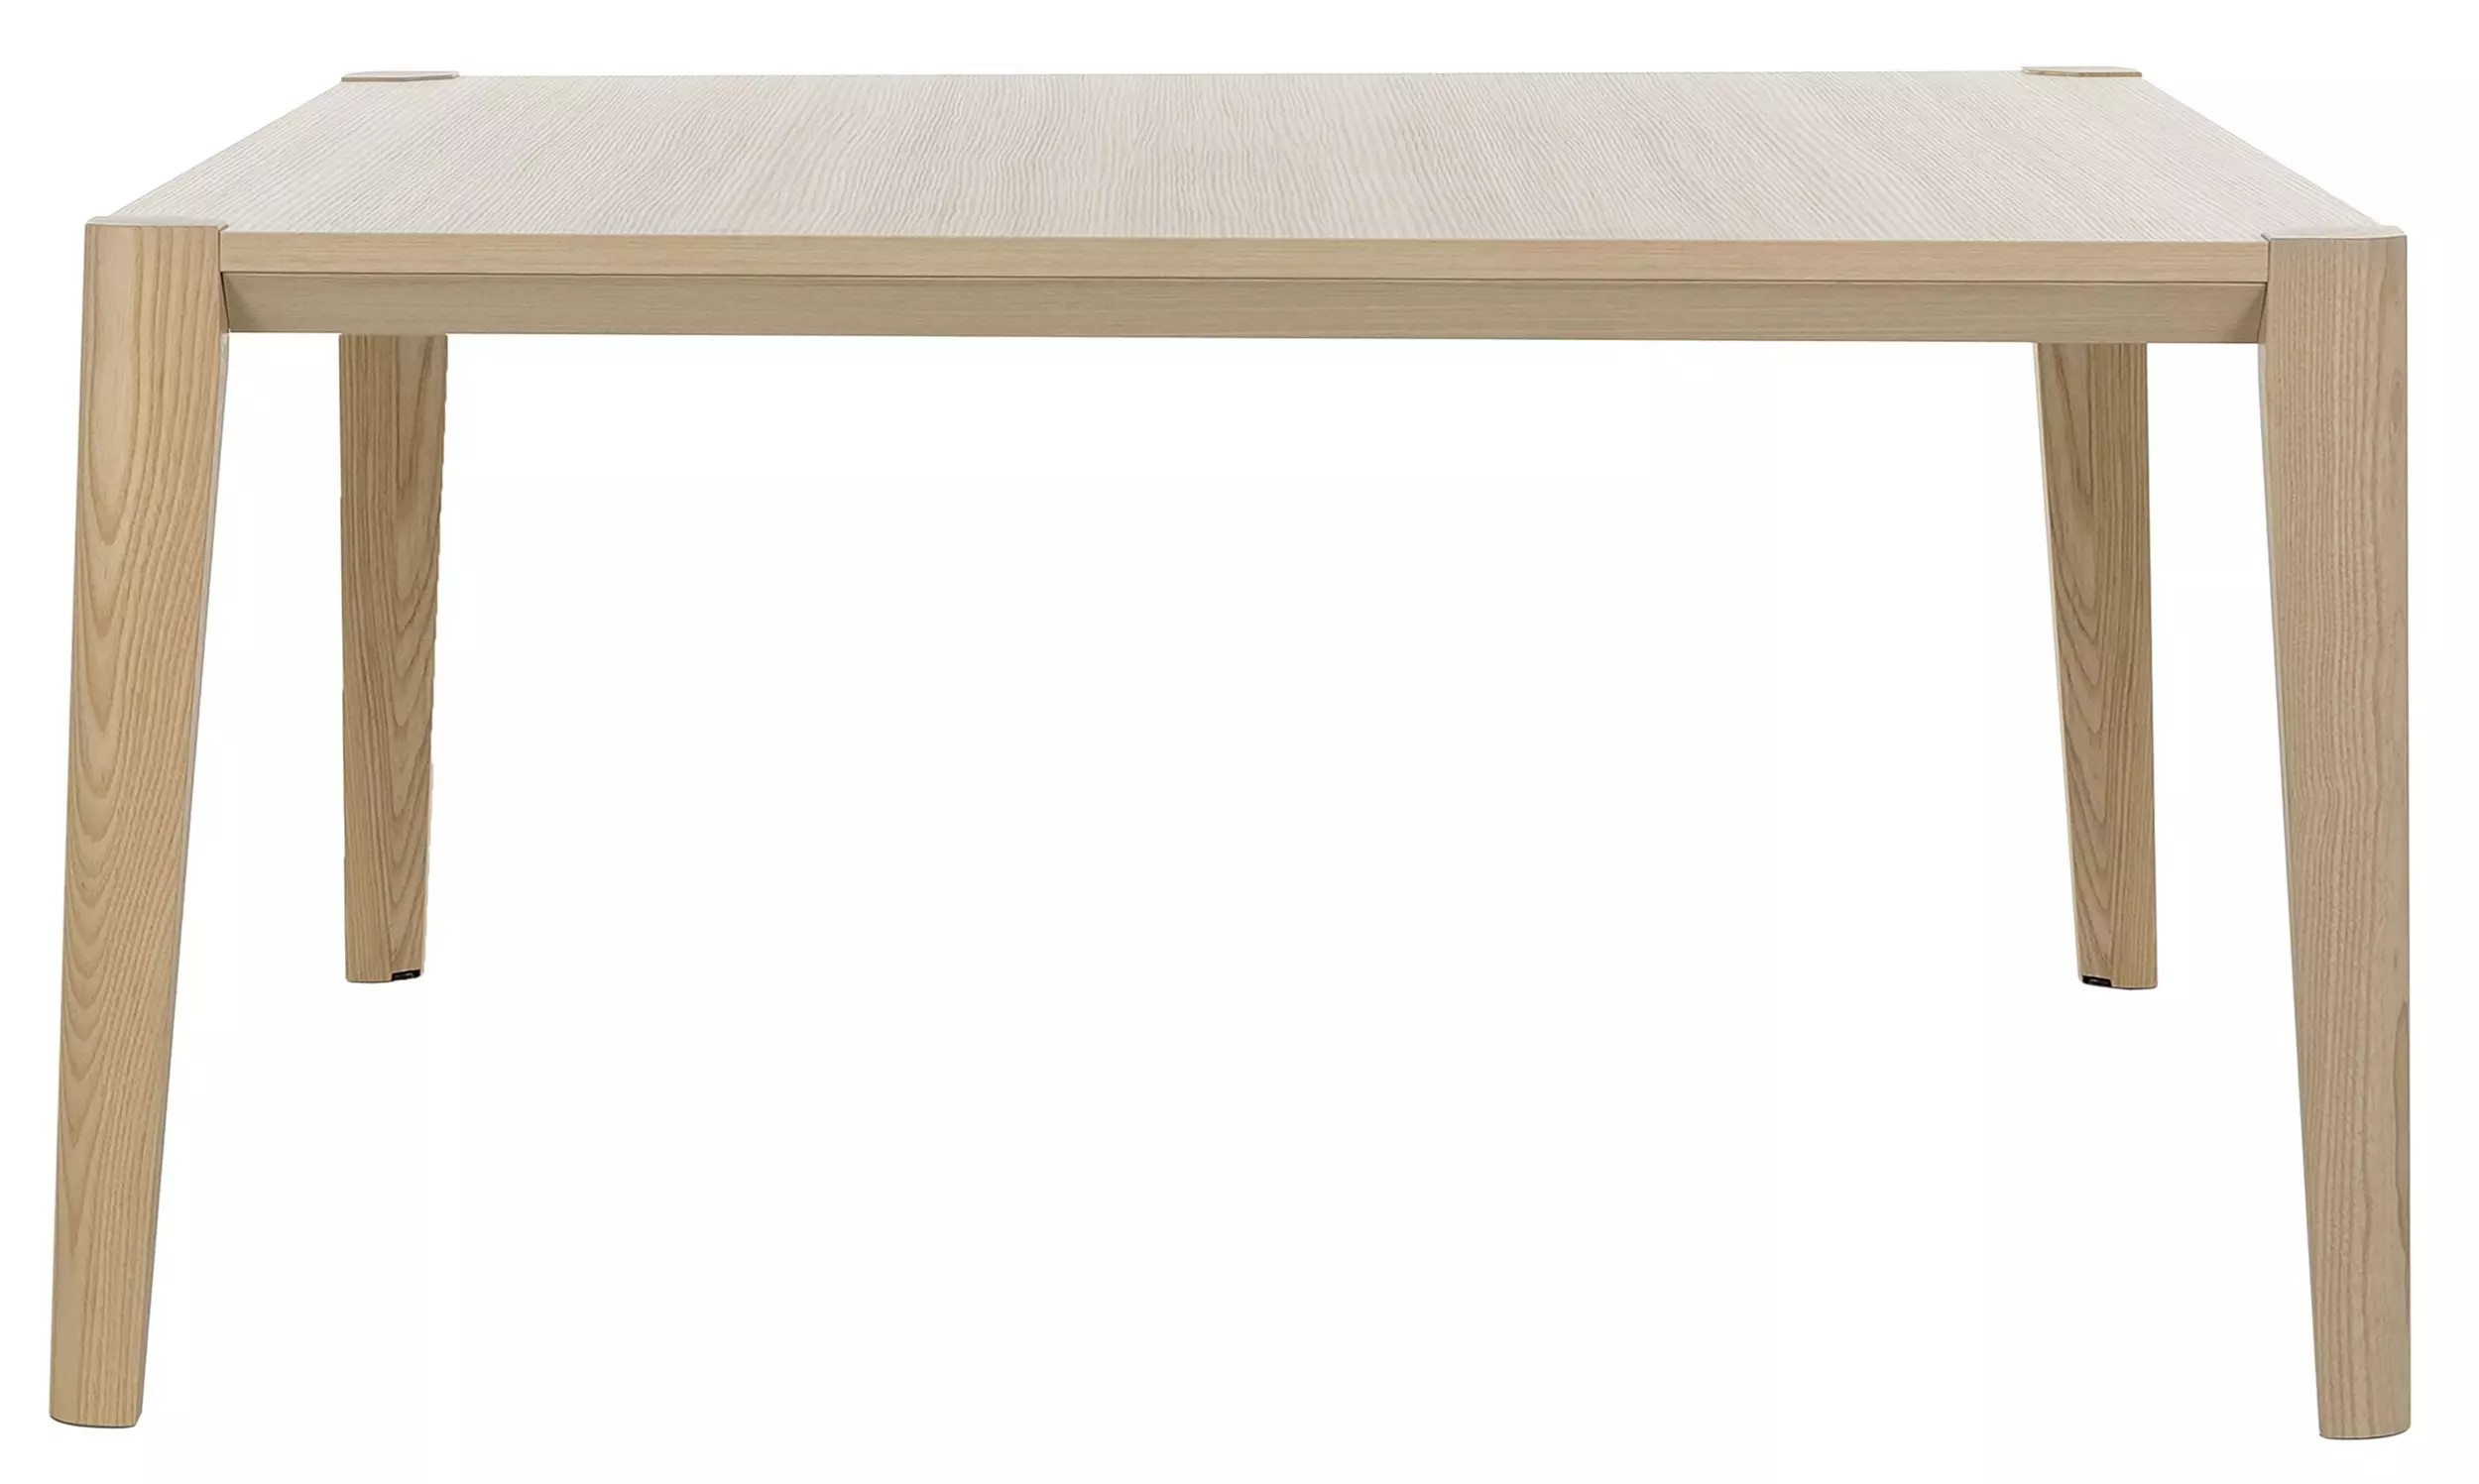 Table ABSOLU - 140x120 cm - Pieds bois - Chêne structuré